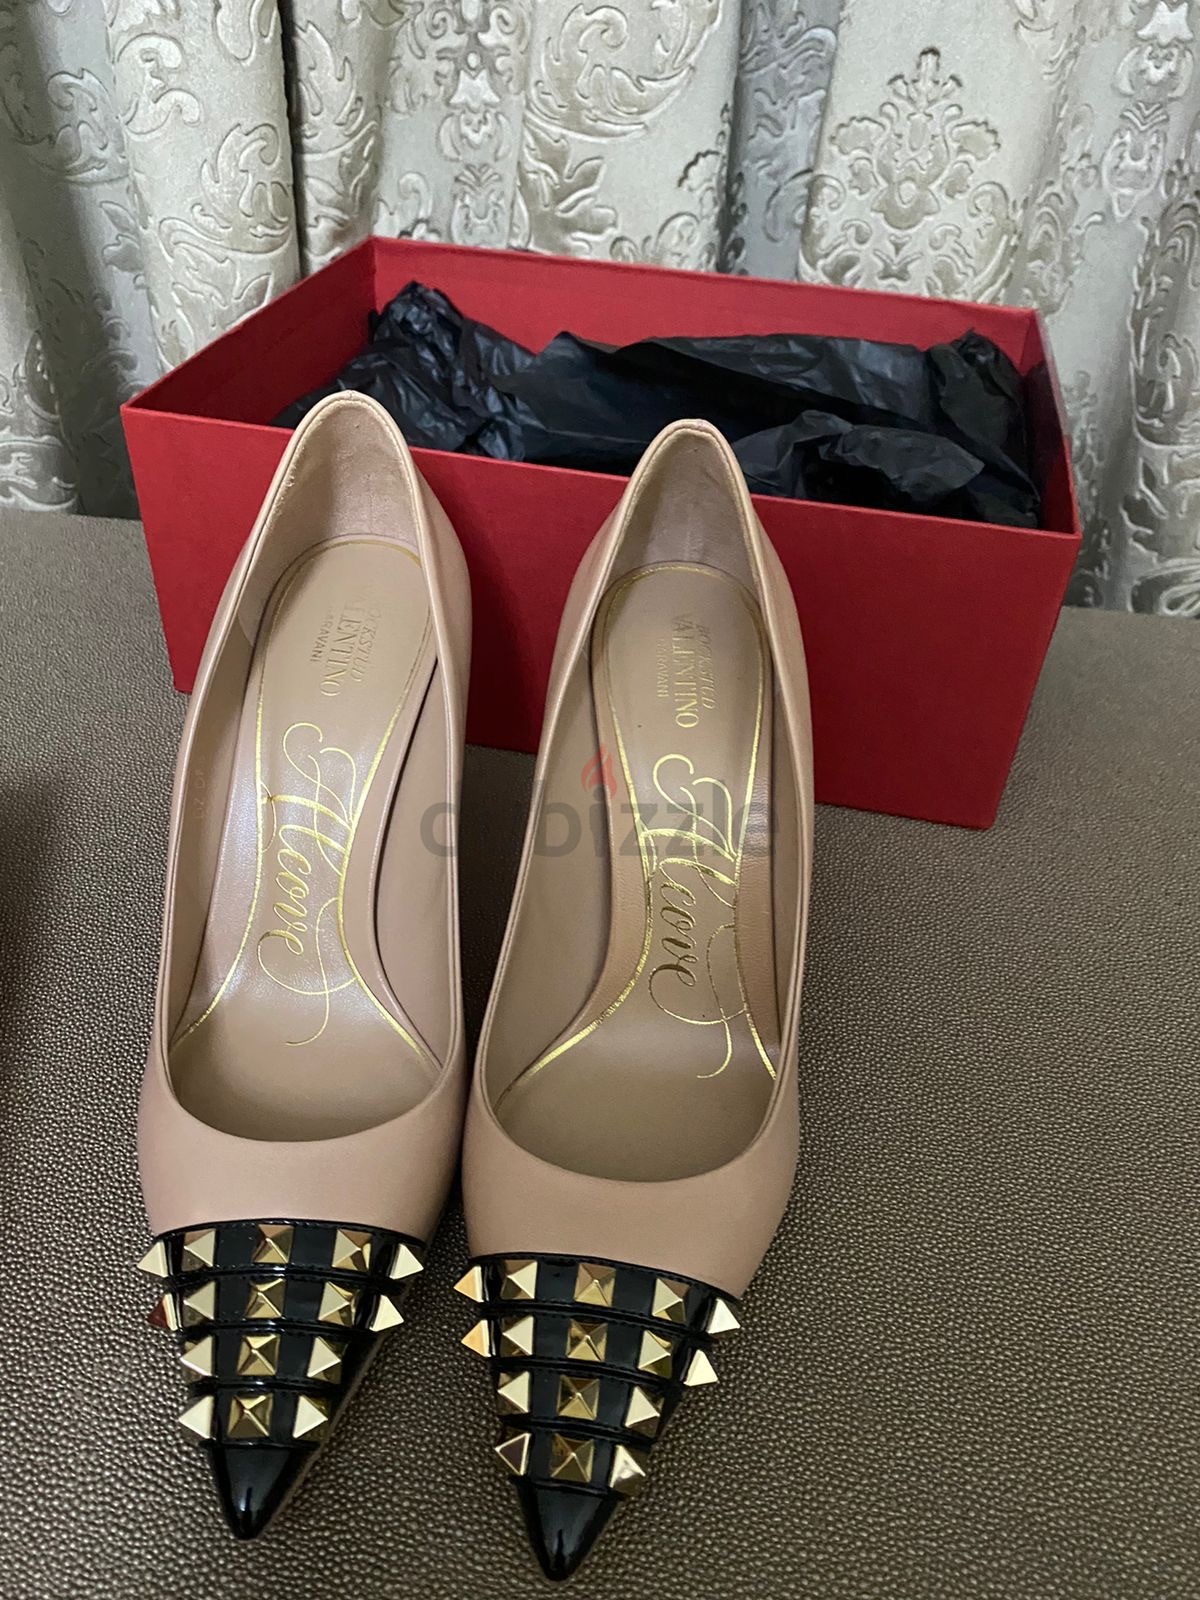 Original valentino elegant heels - Footwear - 1085378821